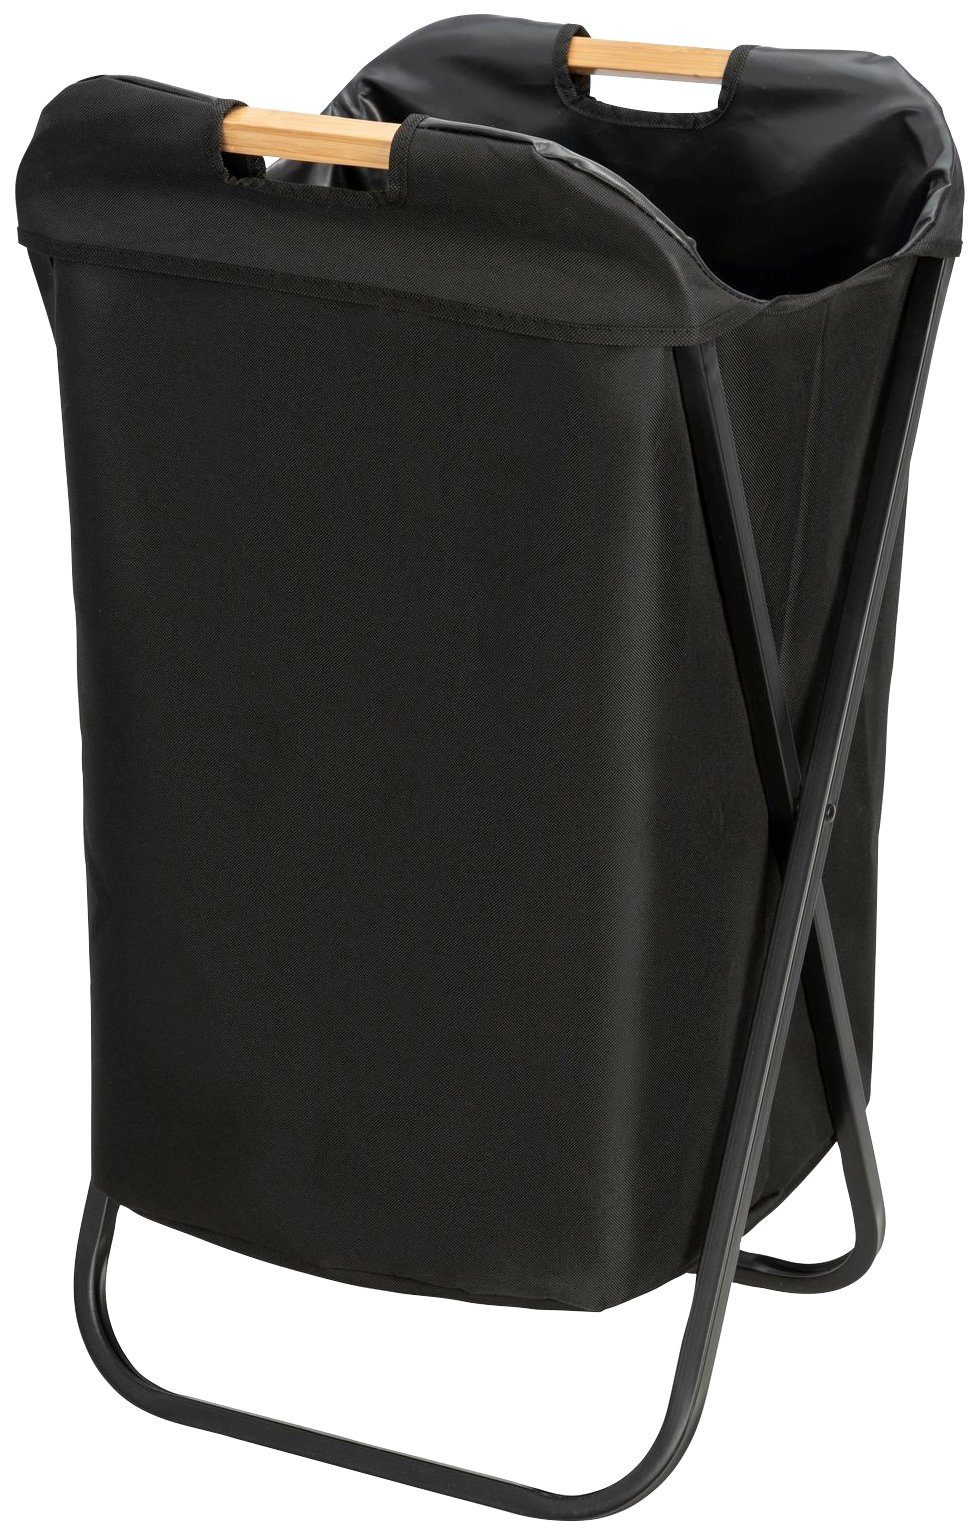 WENKO Wäschekorb Loft, klappbar, schwarz, Maße (B x H x T): 41 x 71 x 42 cm  online kaufen | OTTO